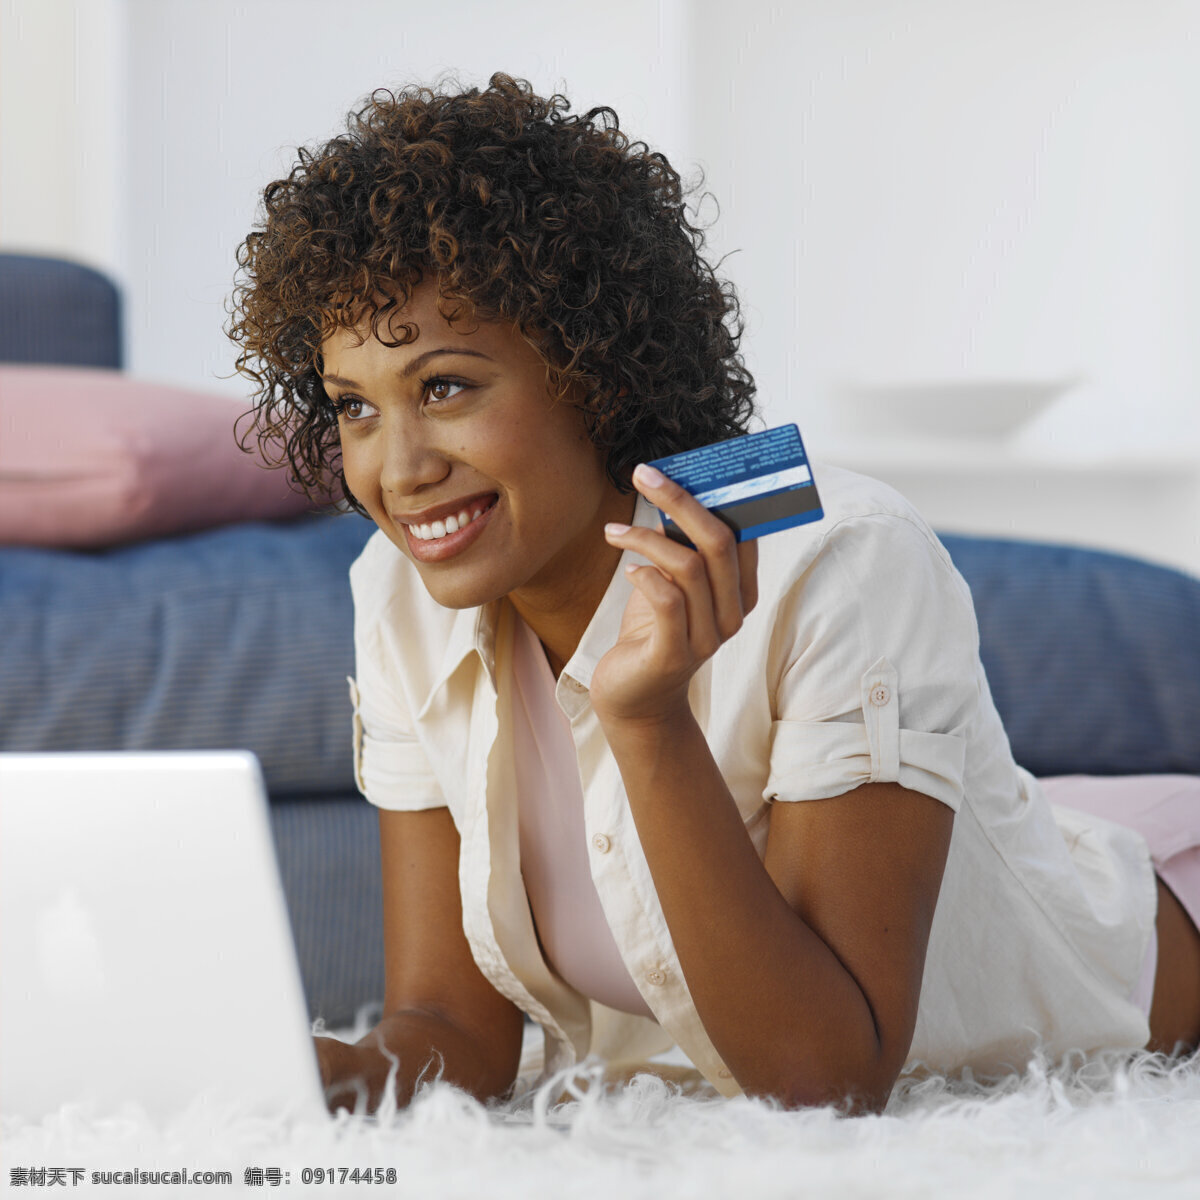 网上购物 黑人 女性 女性生活 外国女性 女人 美女 黑人妇女 银行卡 信用卡 美女图片 人物图片